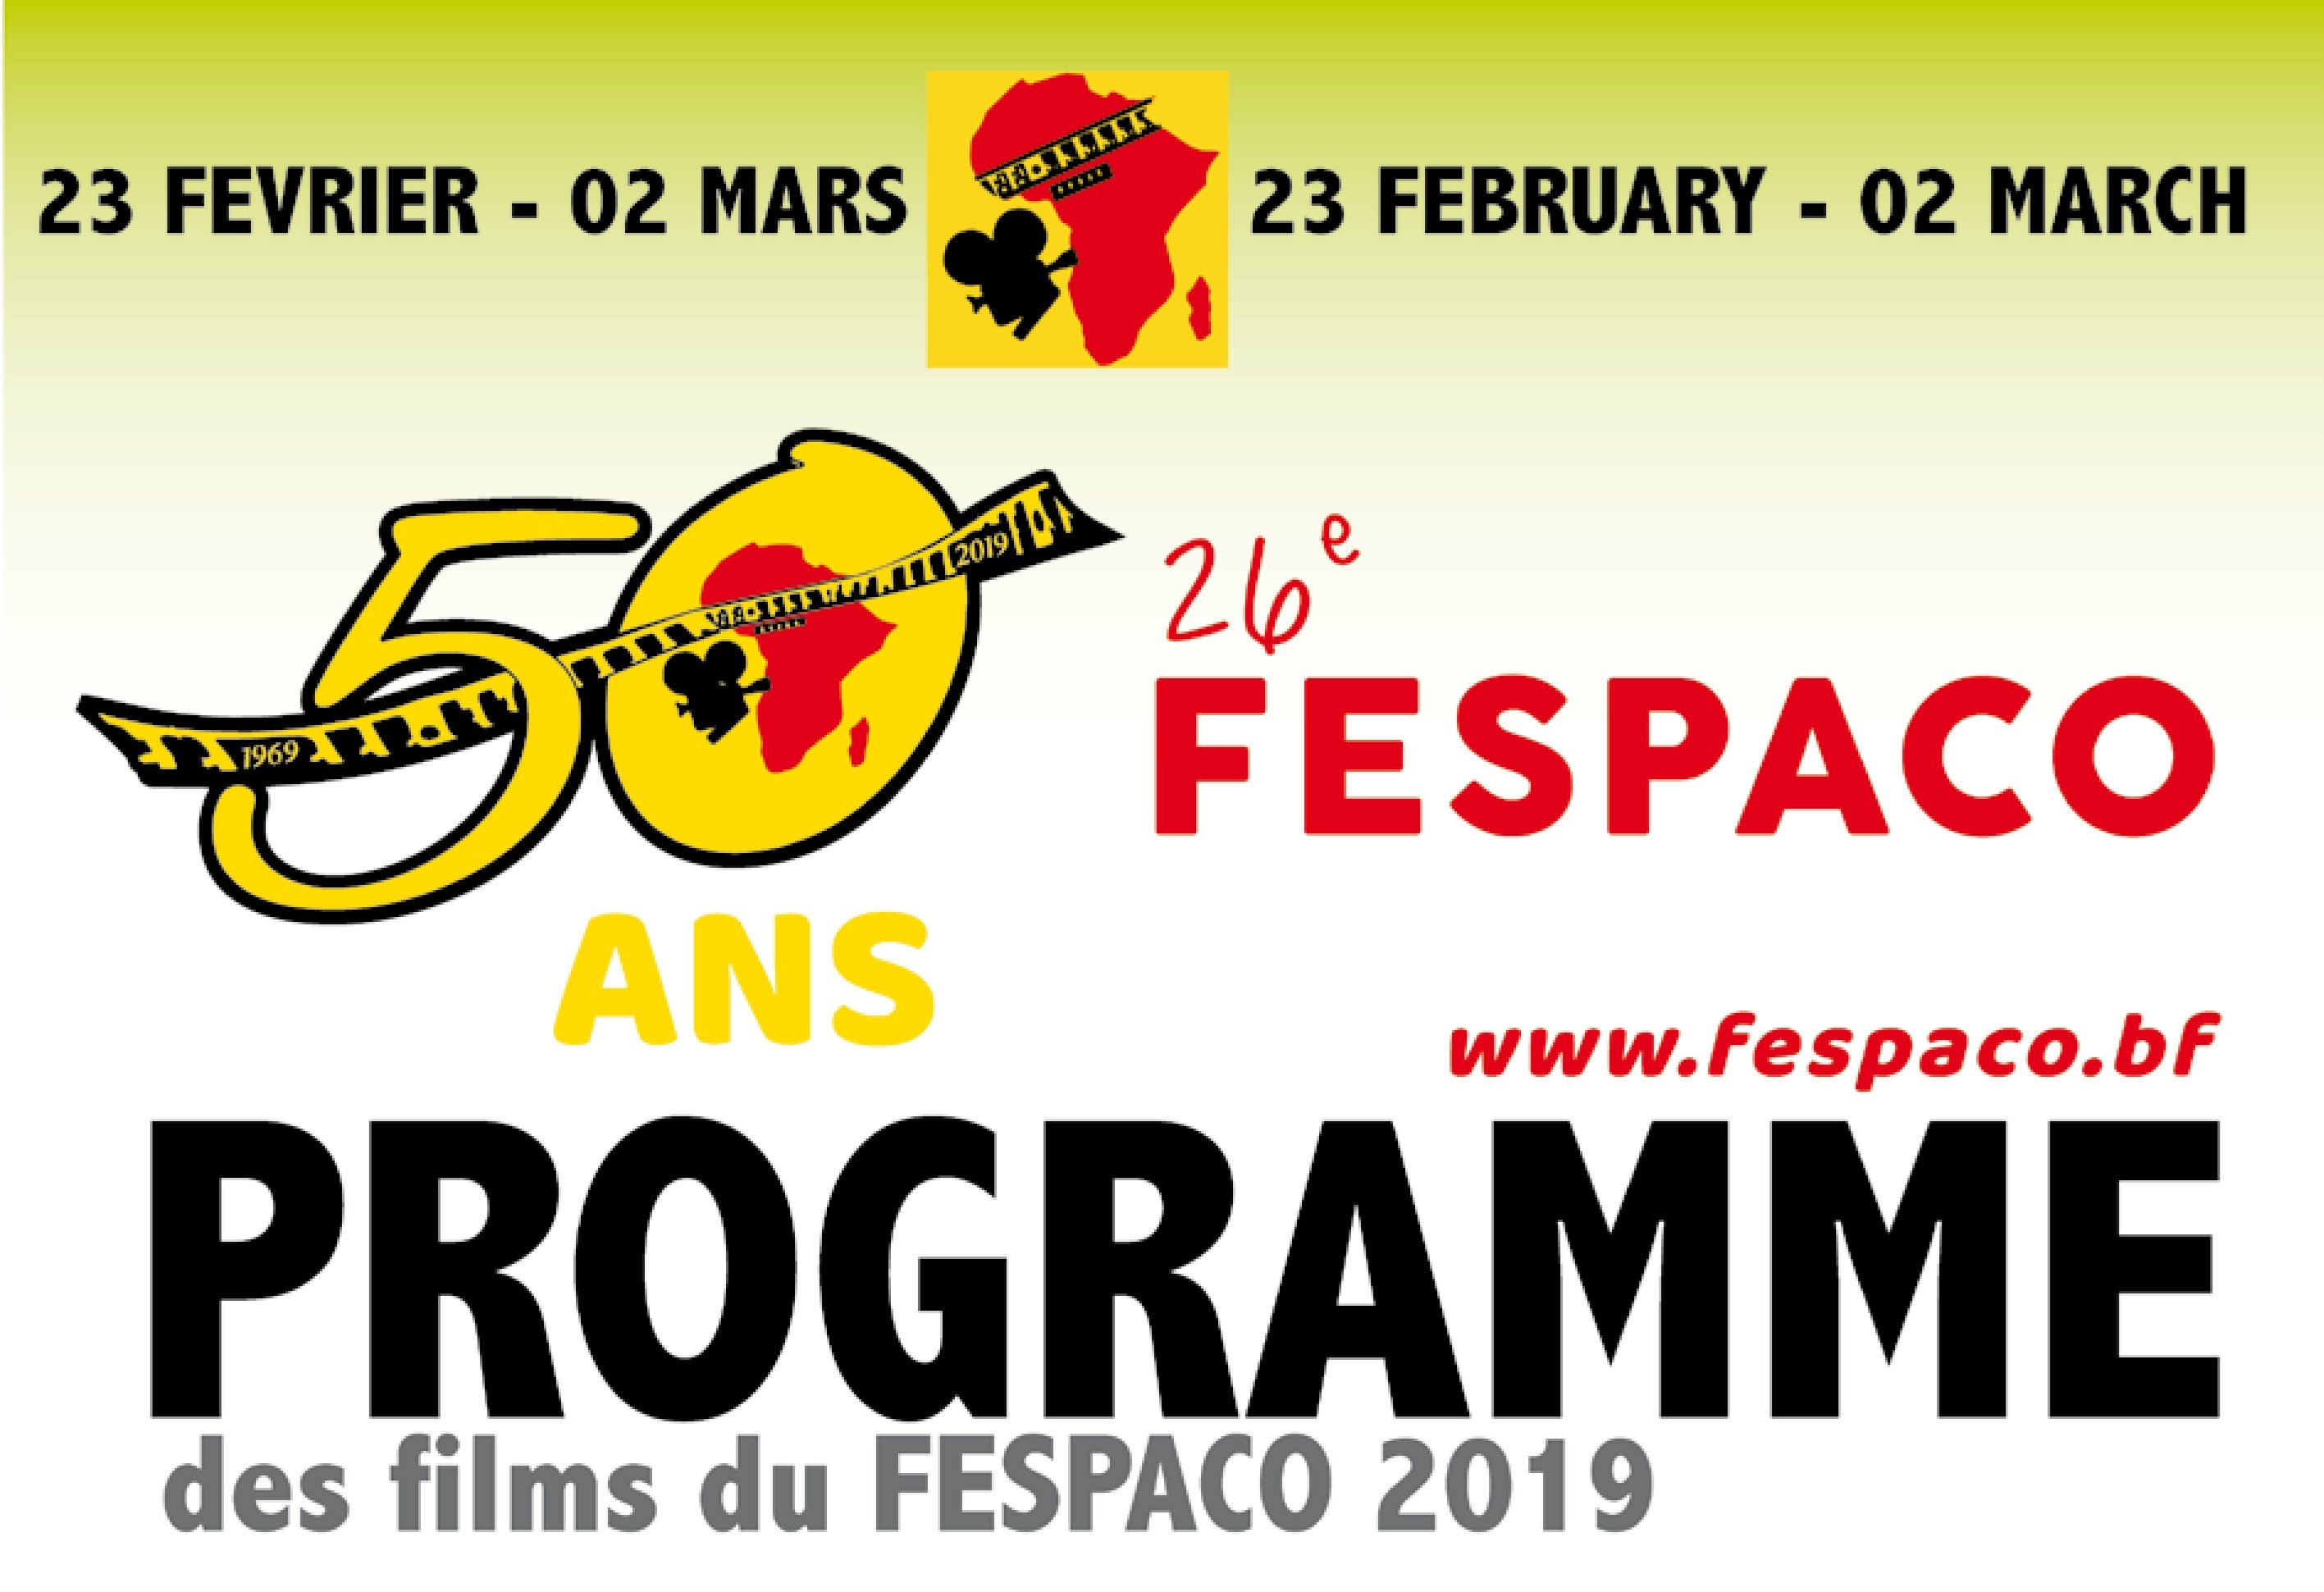 Fespaco 2019 : Programme de projection des films du mercredi 27 février 2019